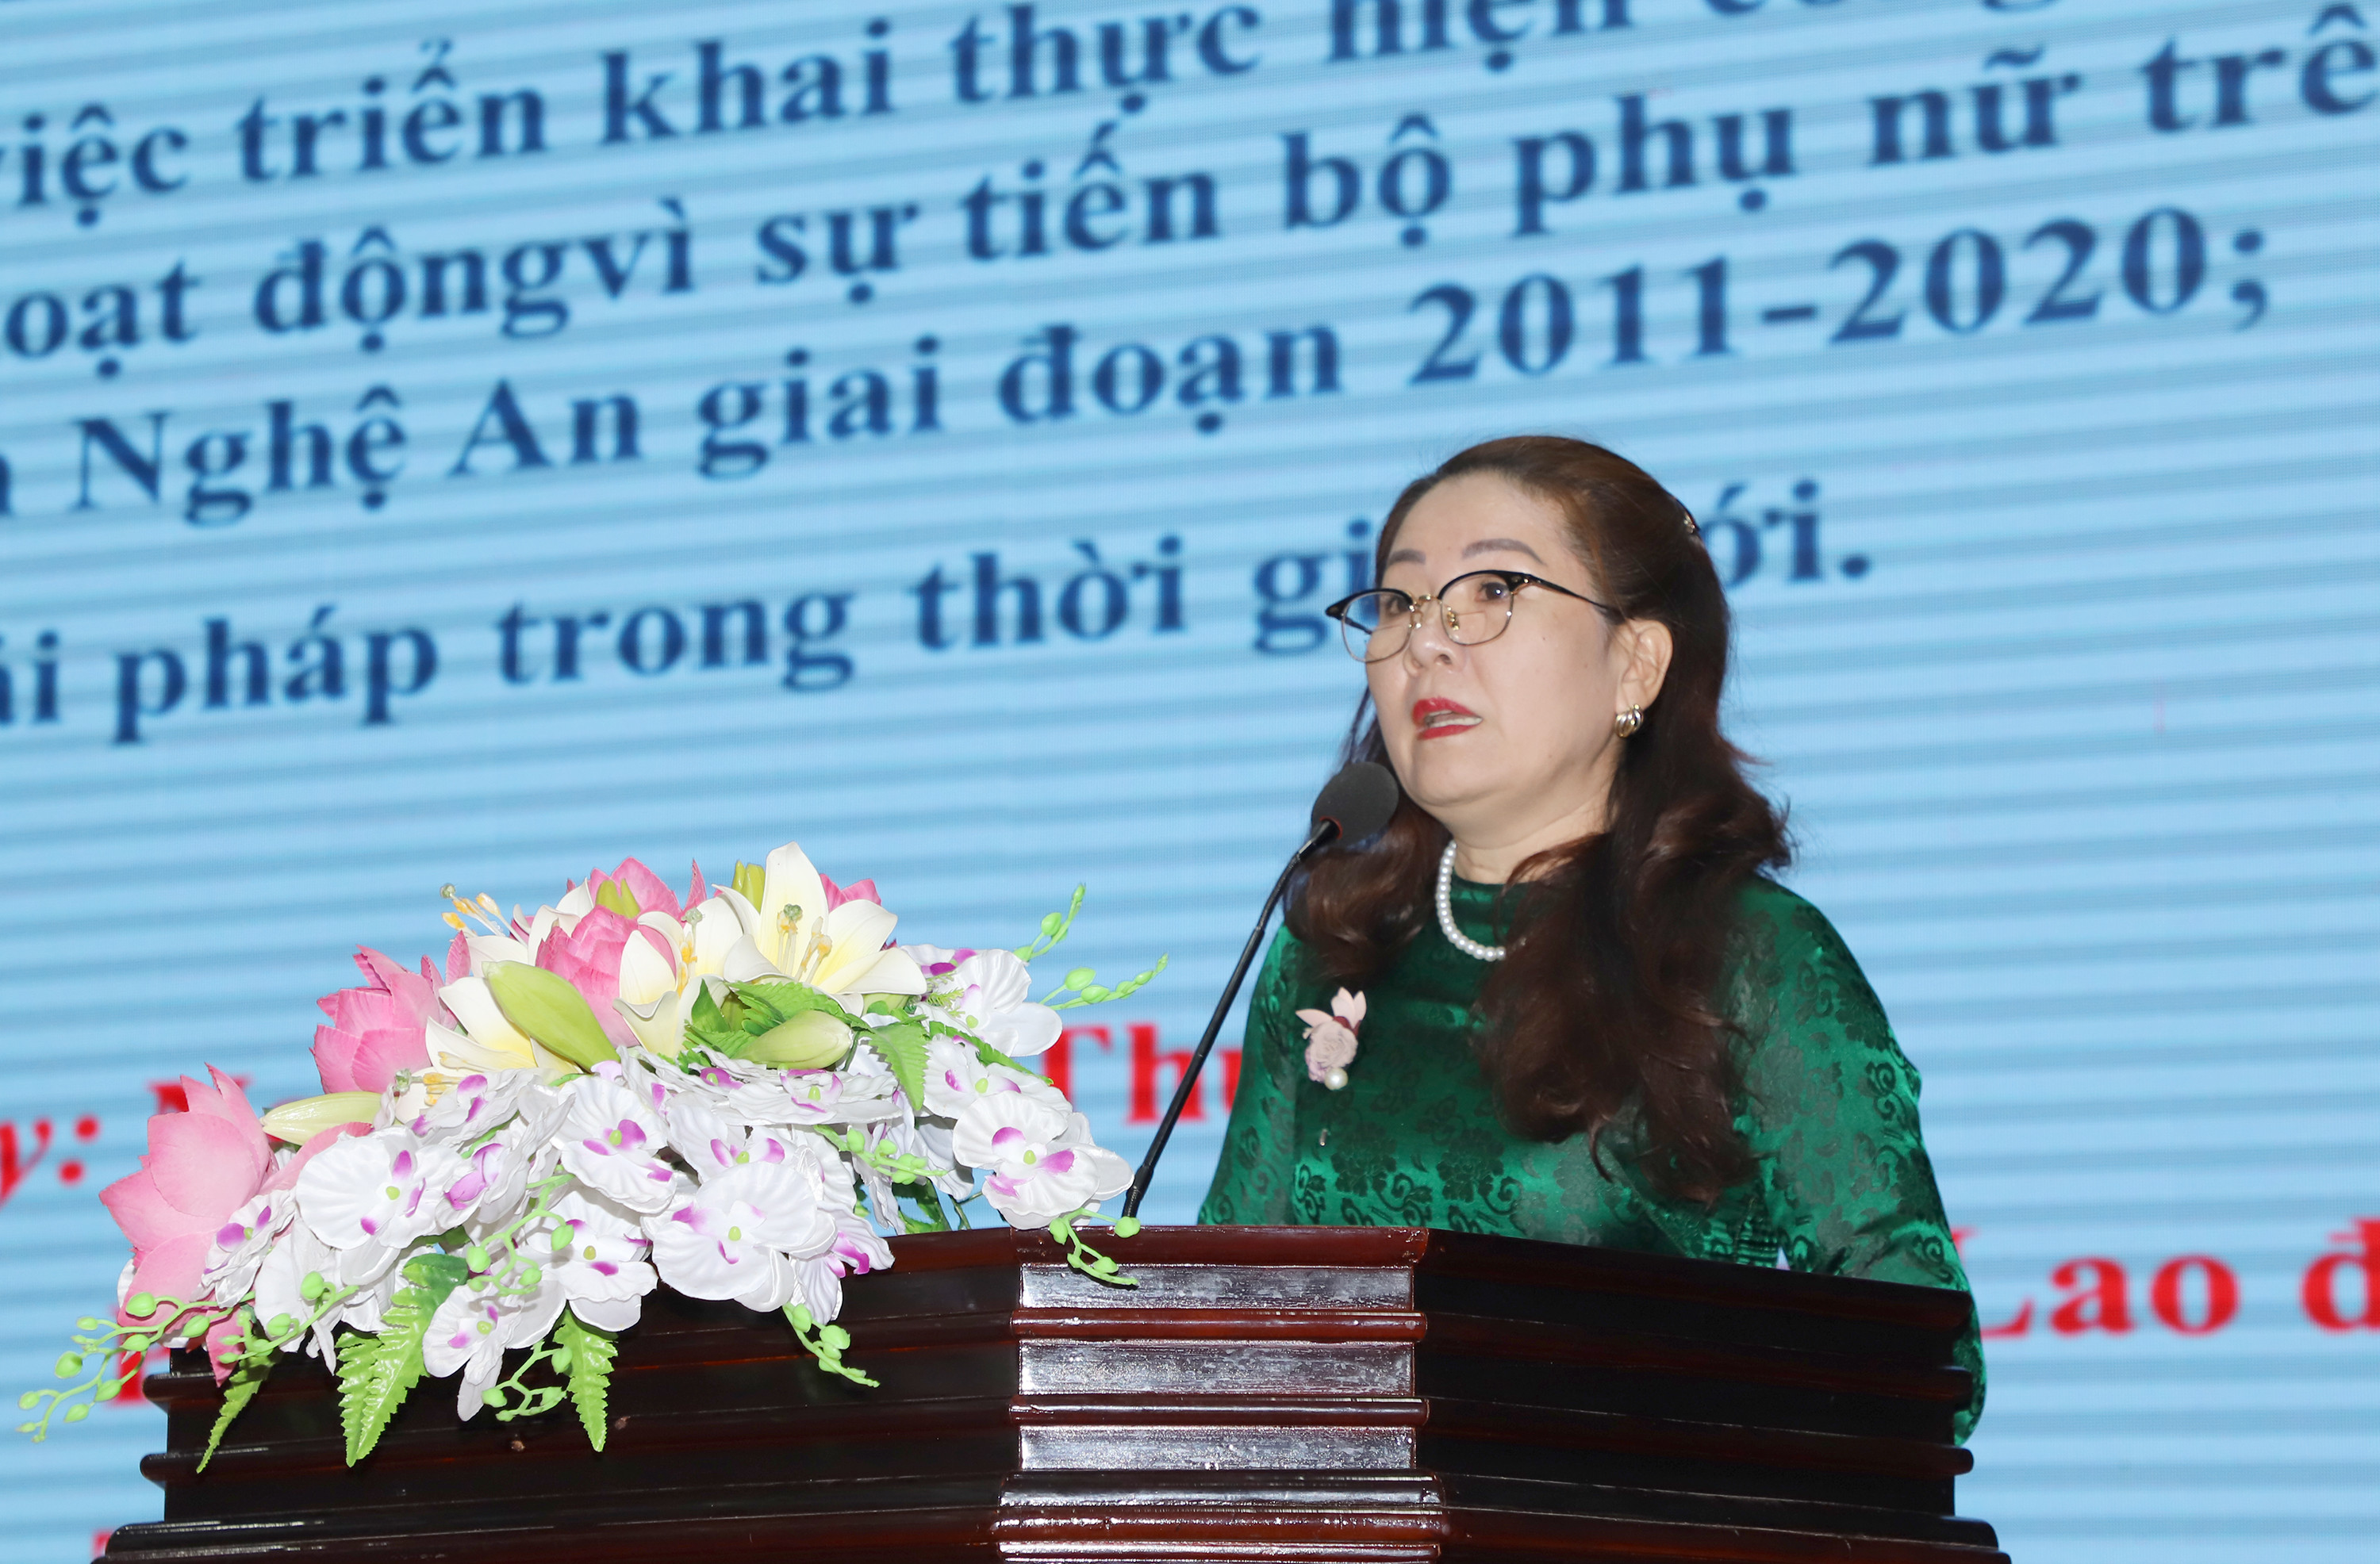 Bà Nguyễn Thị Thu Nhi - Phó Chủ tịch Liên đoàn lao động tỉnh trình bày tham luận tại Hội nghị. Ảnh: Phạm Bằng